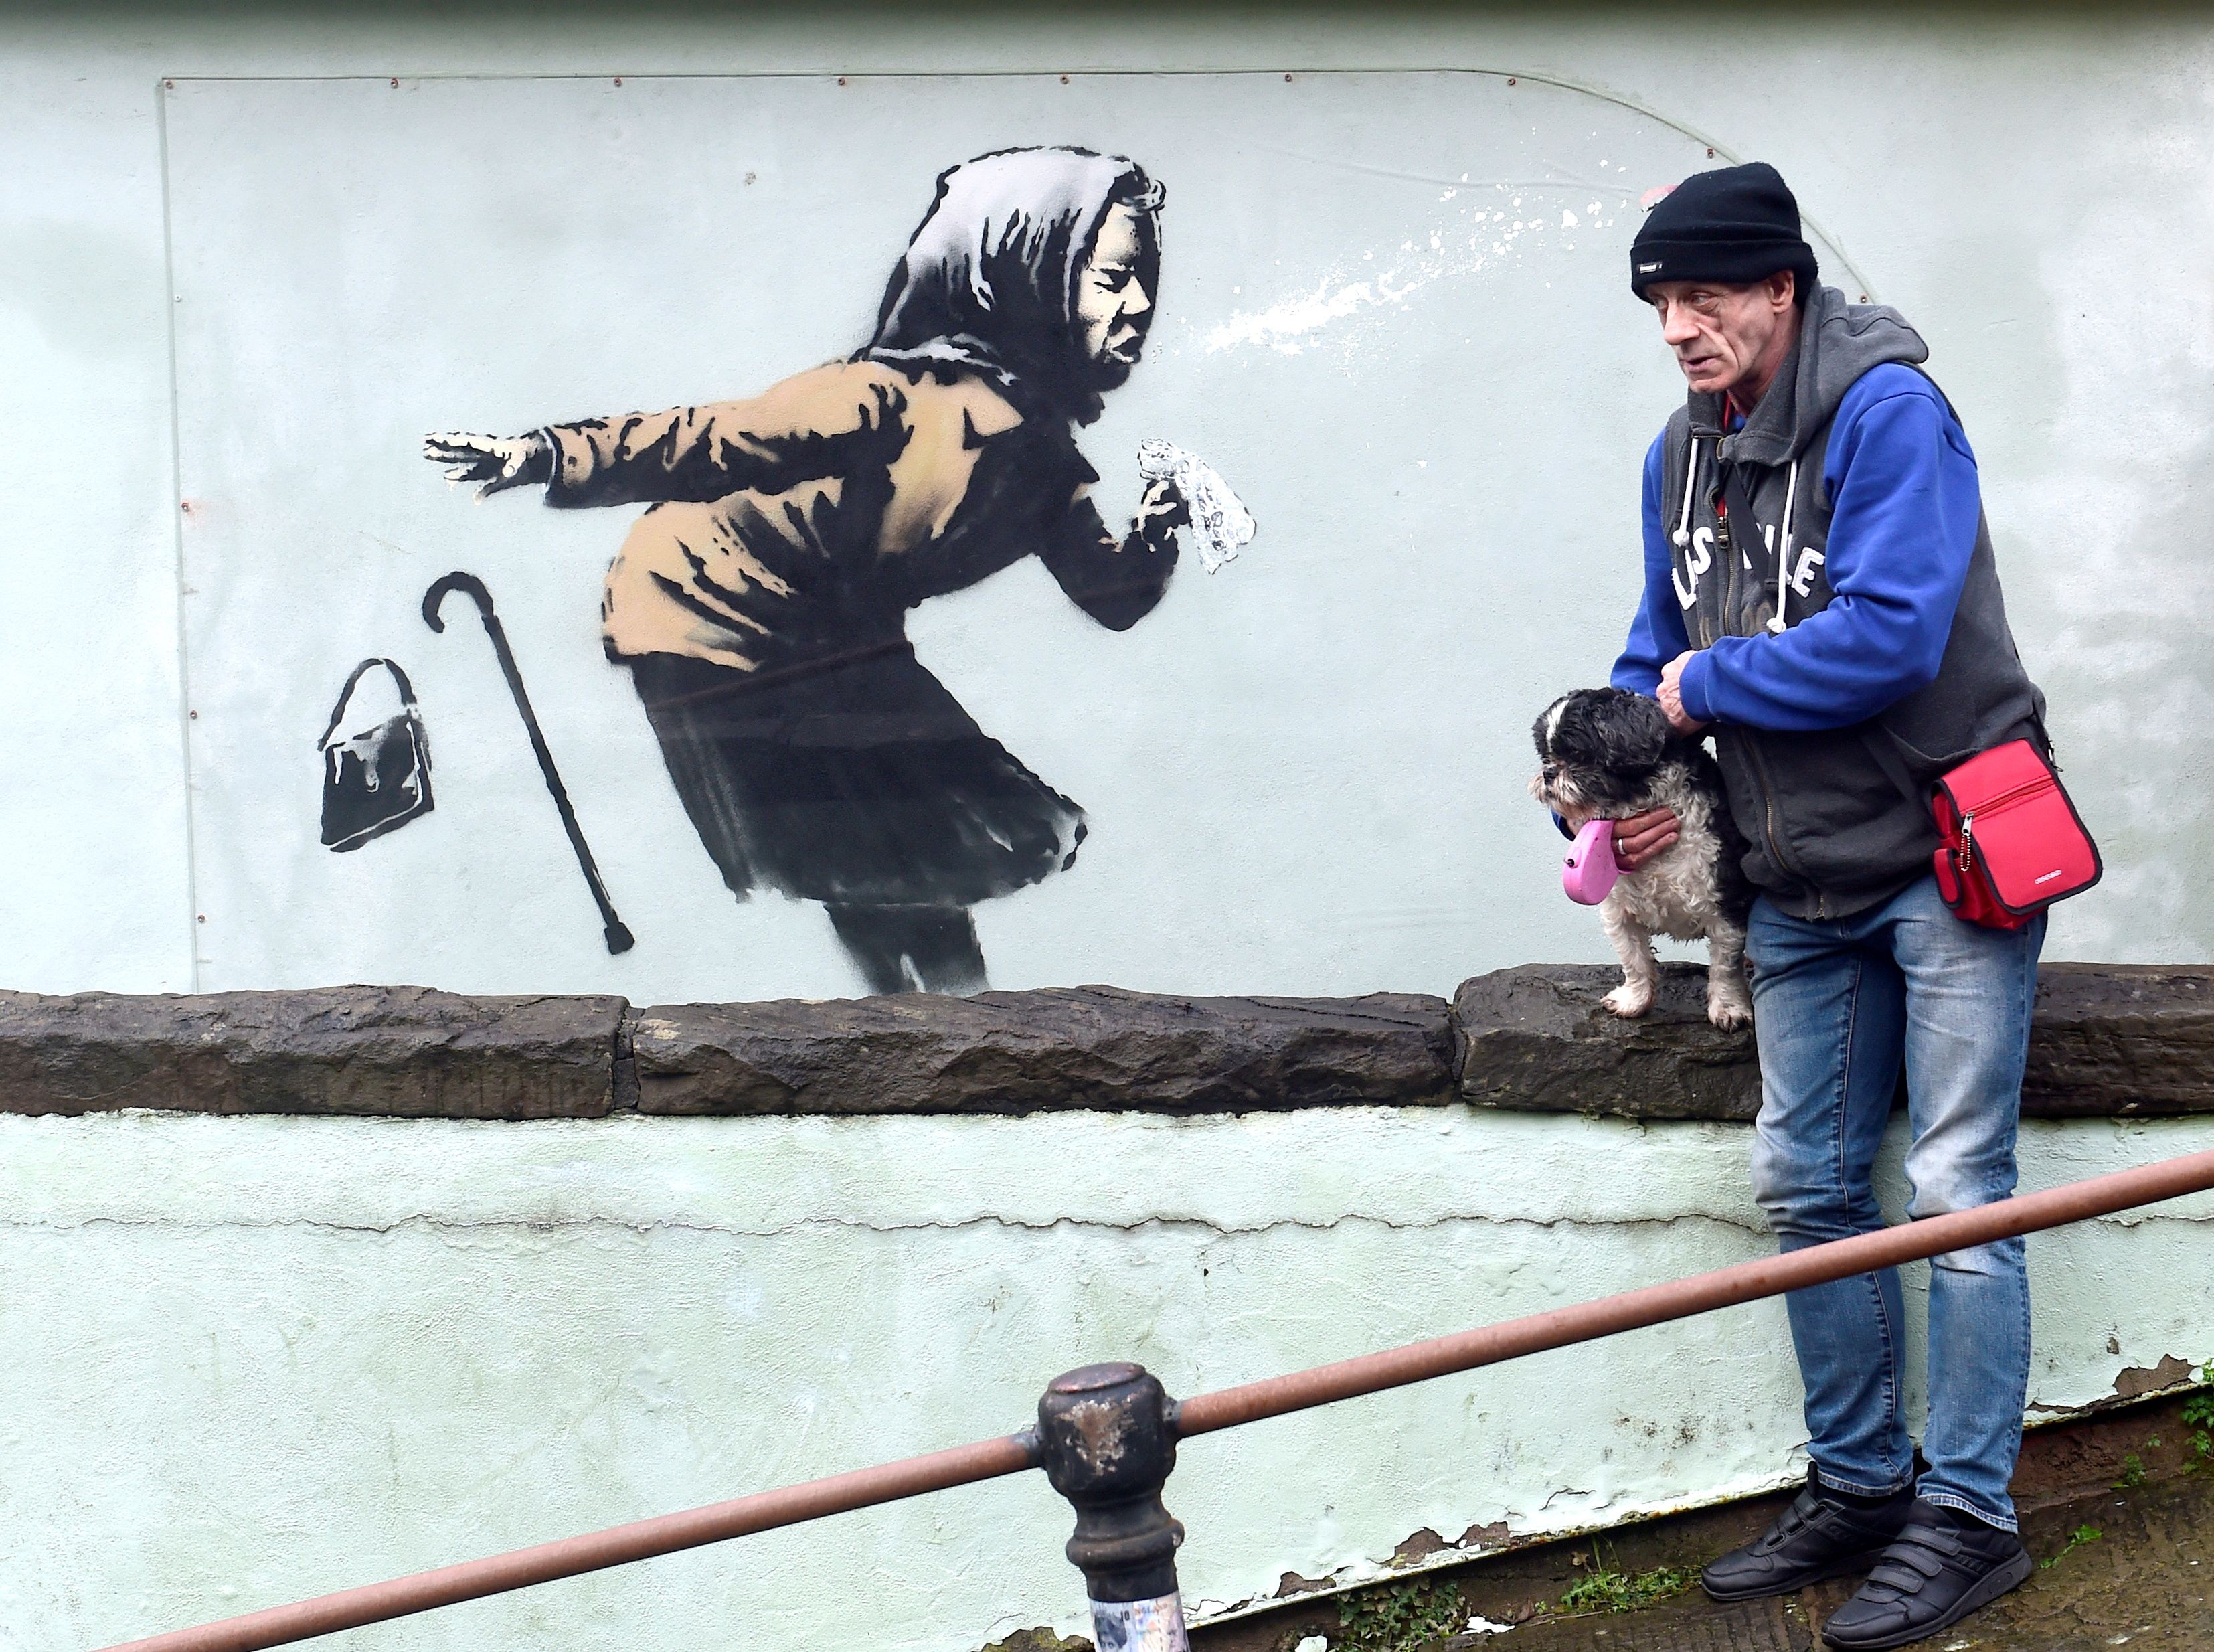 Mural de Banksy de una mujer estornudando aparece en la calle más empinada de Inglaterra (FOTOS)